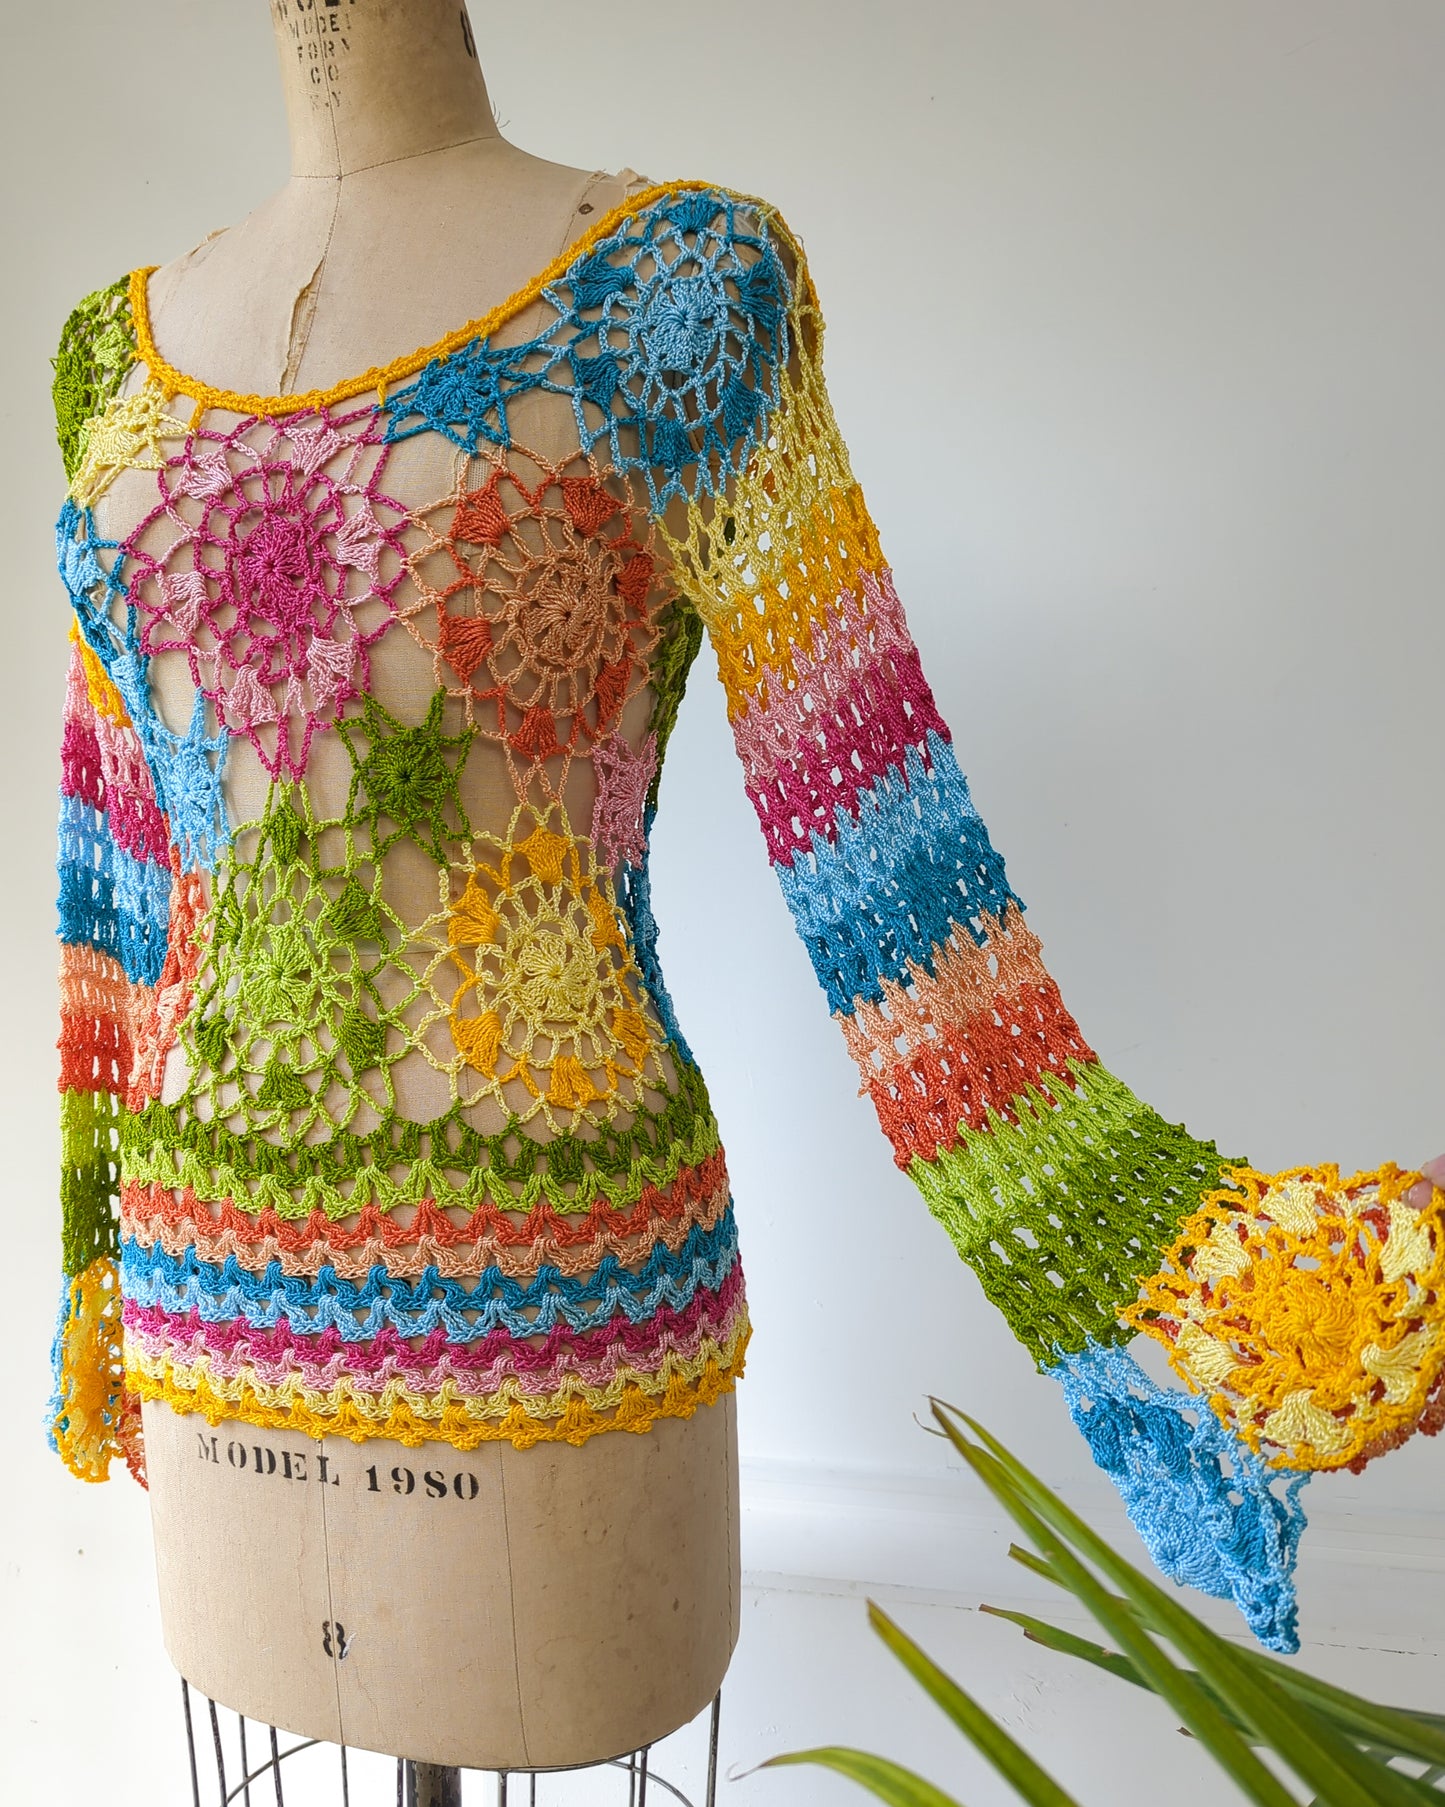 70s rainbow crochet bra top - THRIFTWARES VINTAGE